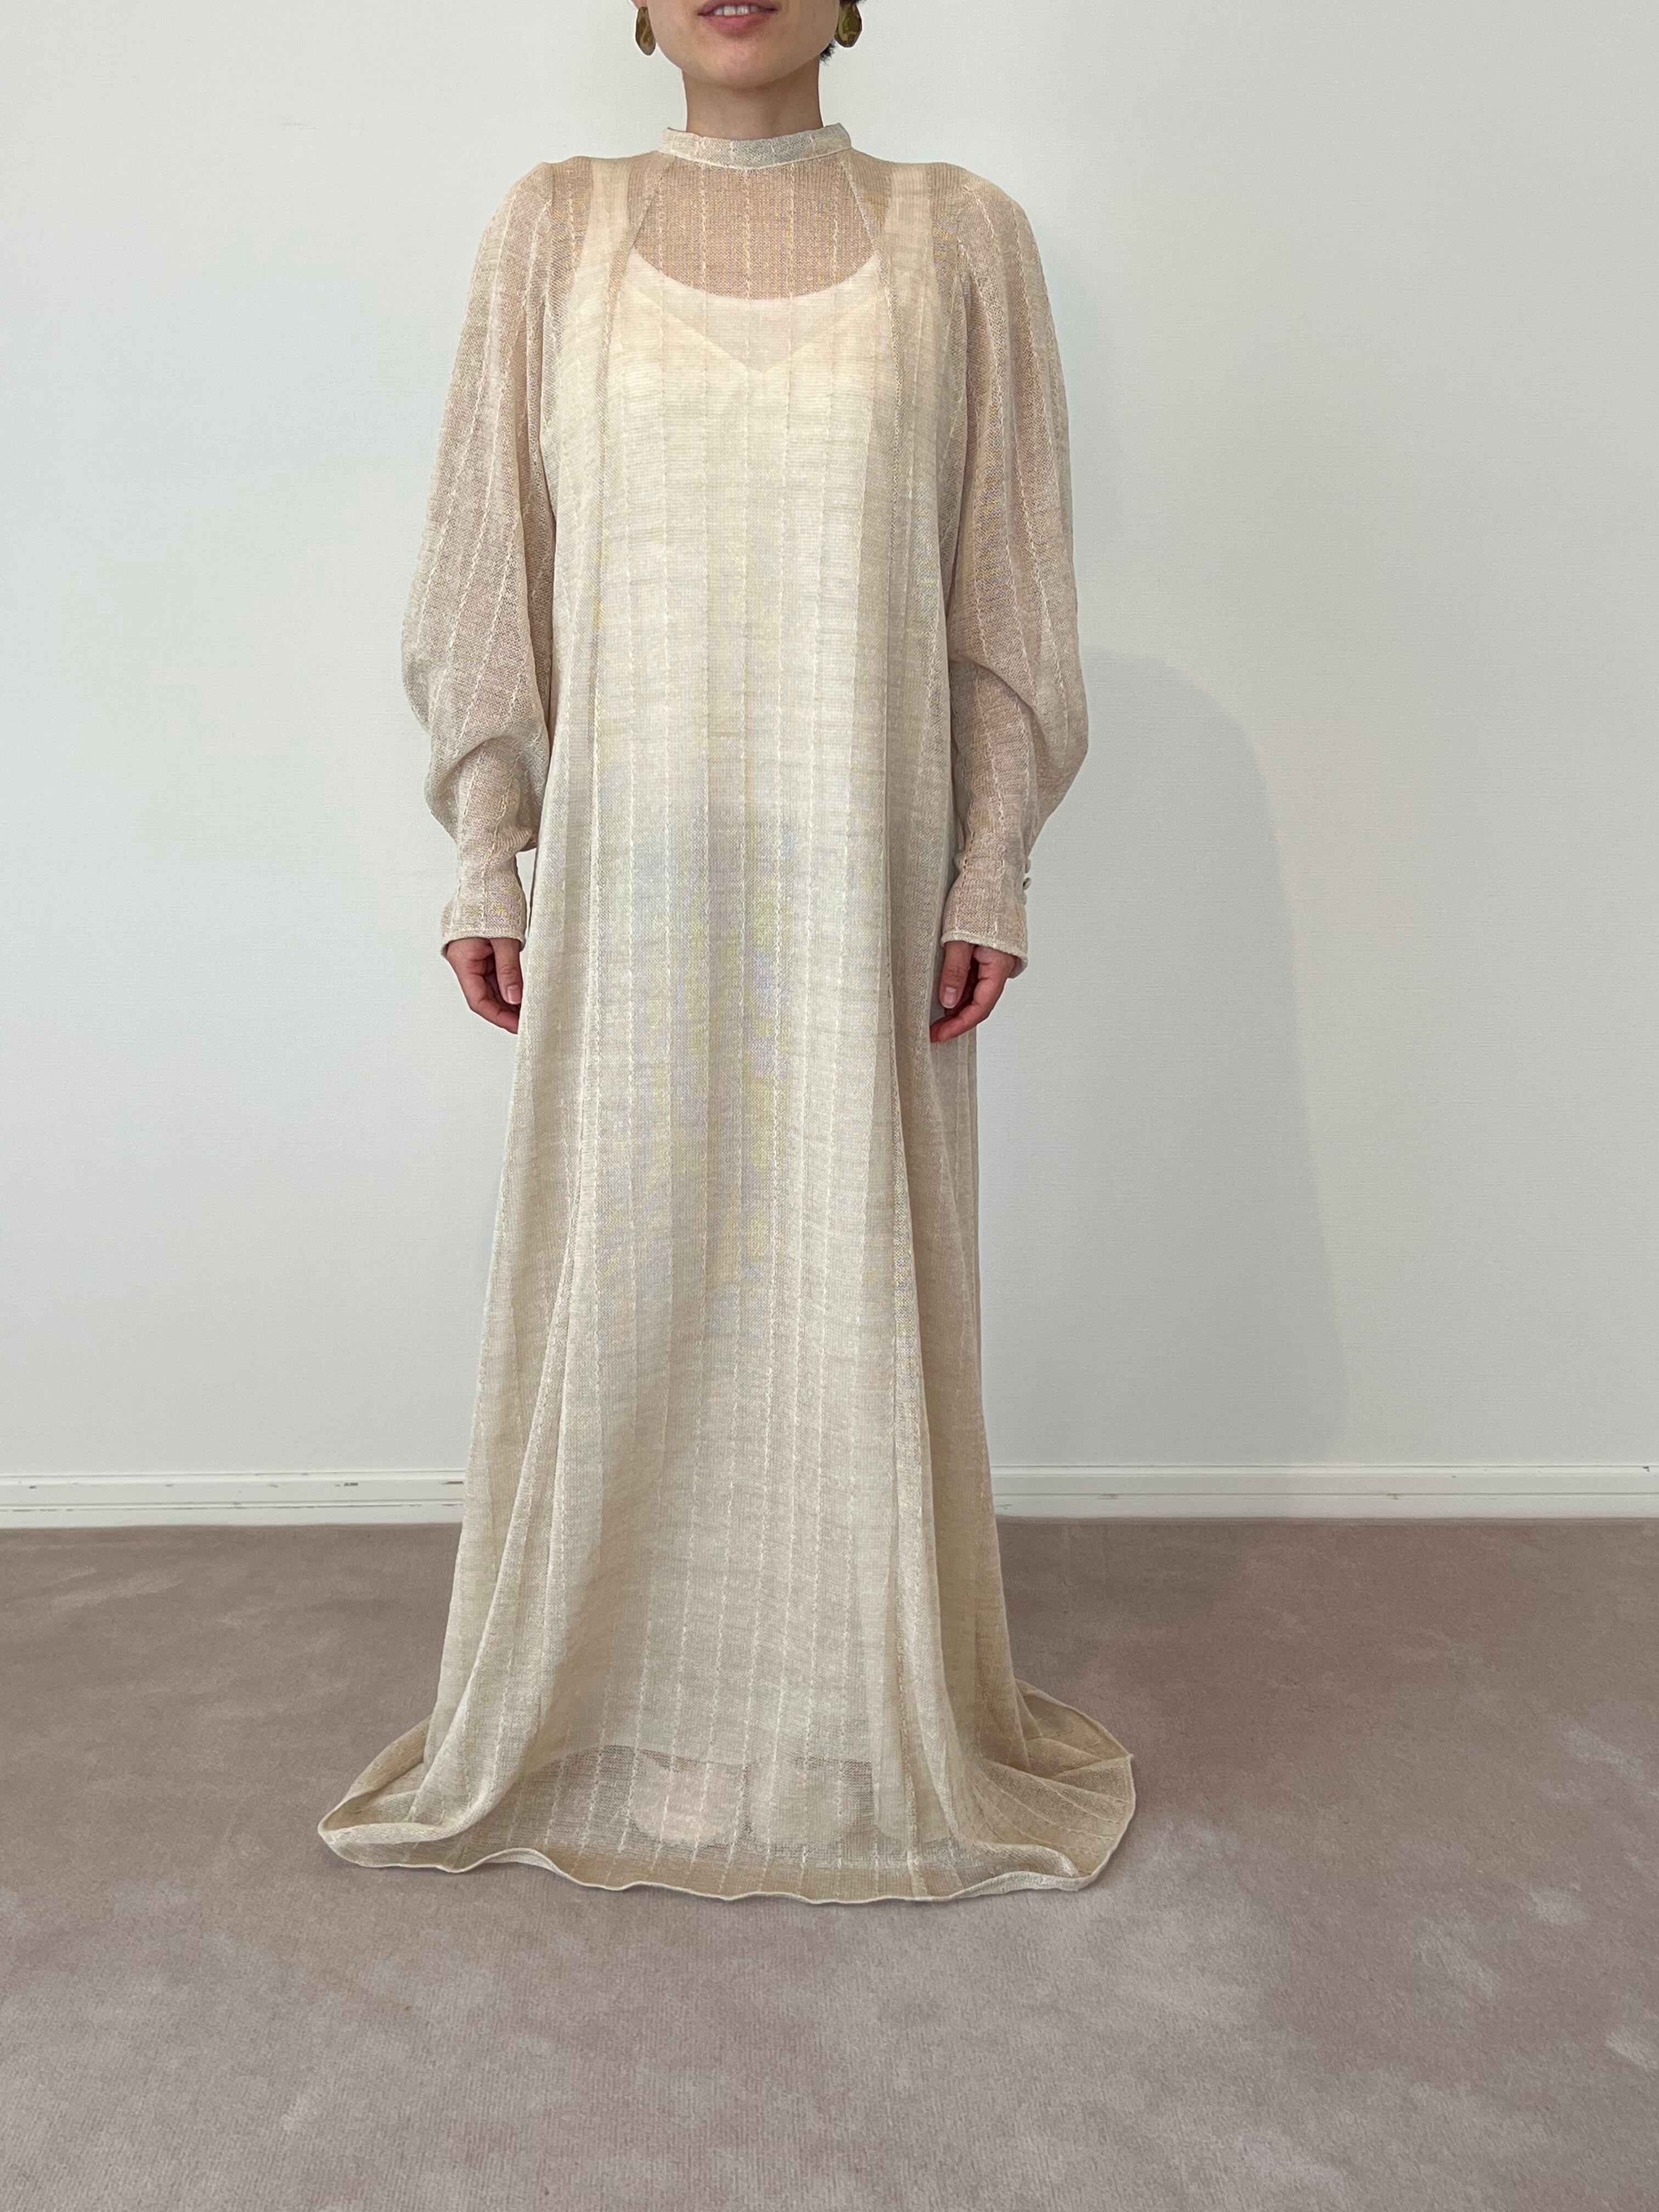 Roman monastic dress/コットンニットベージュ | ANNIK